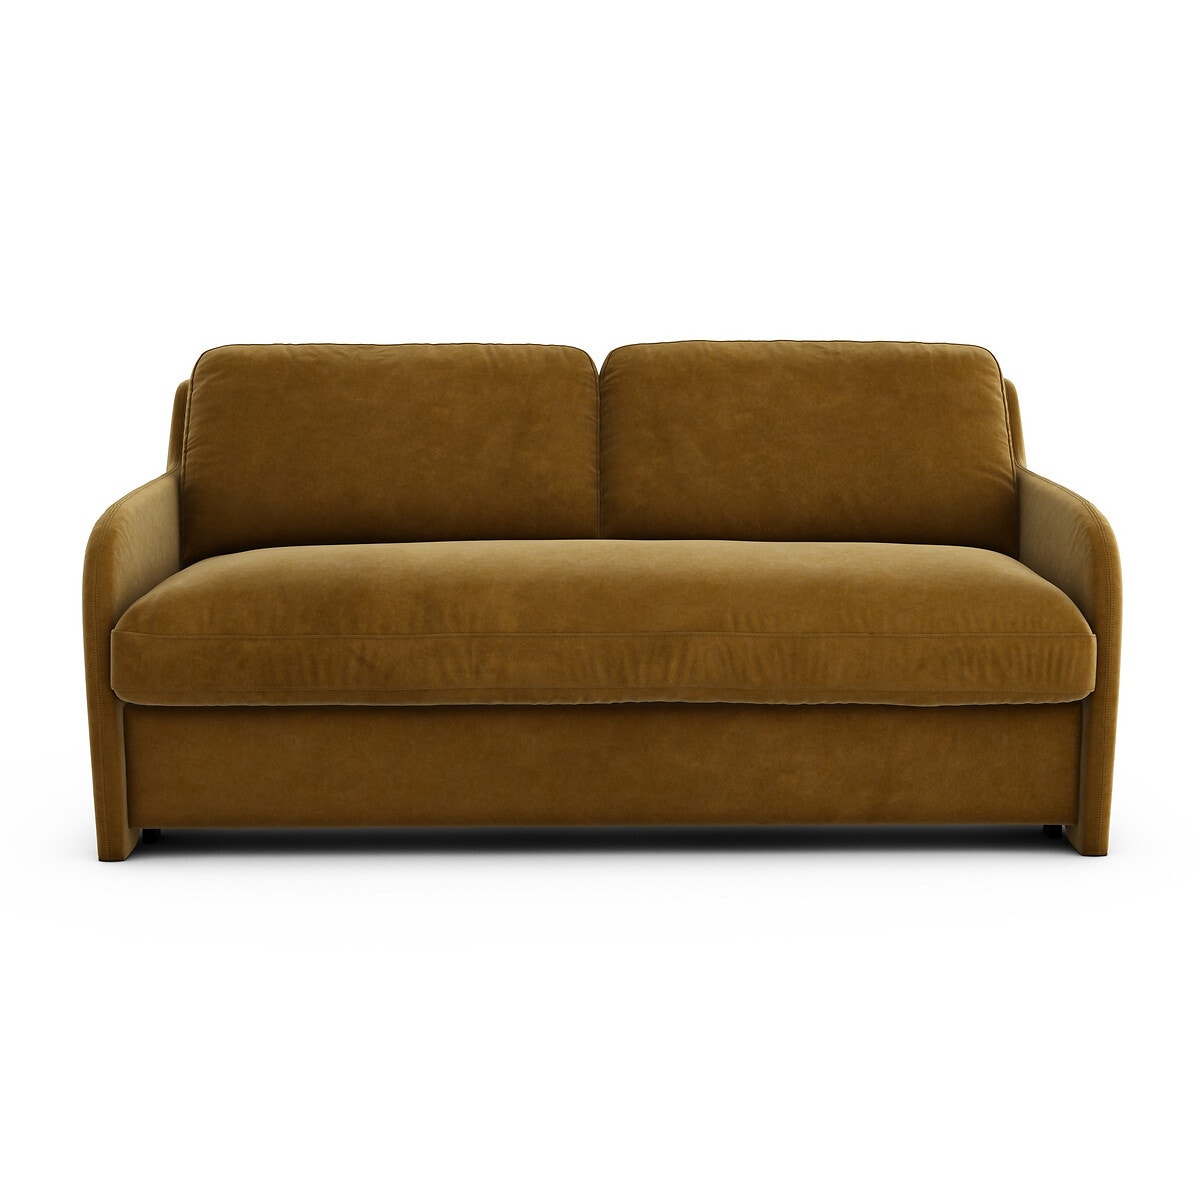 Πτυσσόμενος καναπές από βελούδο, Volute, σχεδίασης E Gallina